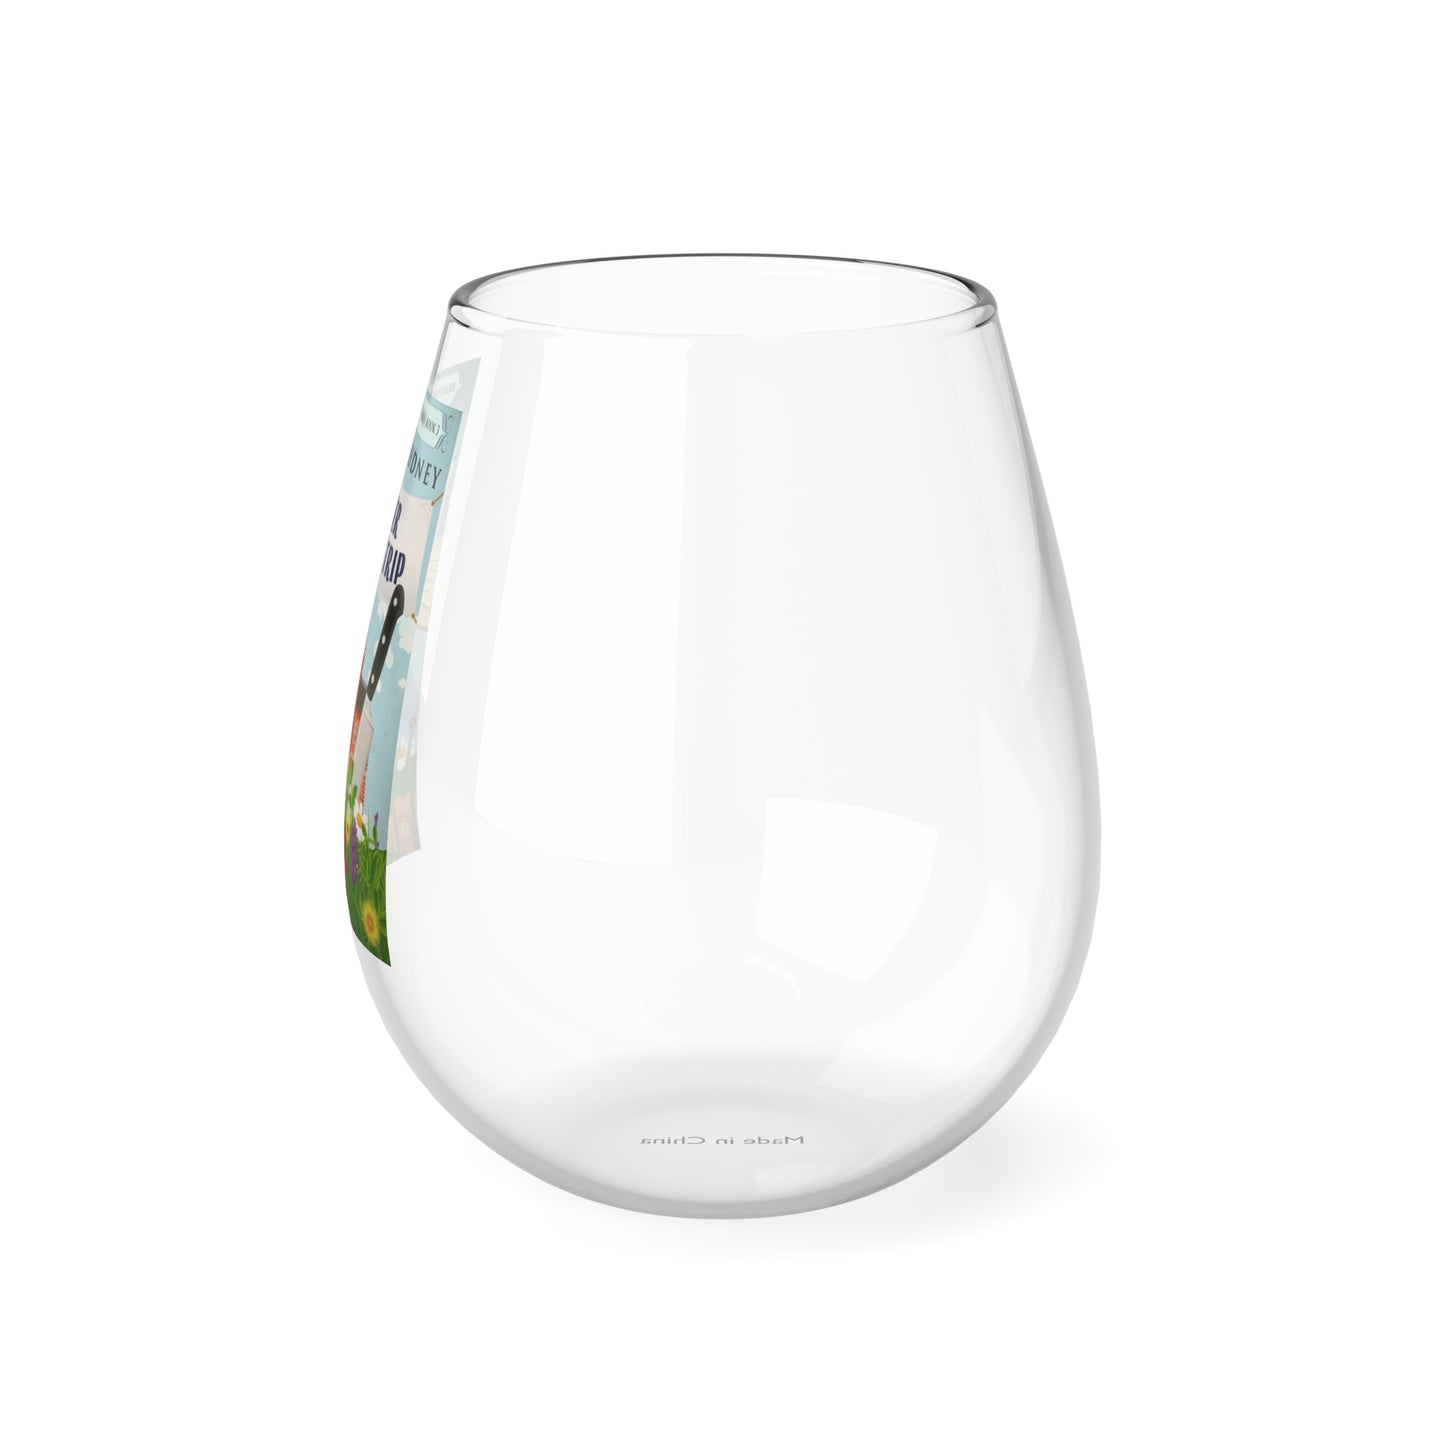 Flower Power Trip - Stemless Wine Glass, 11.75oz